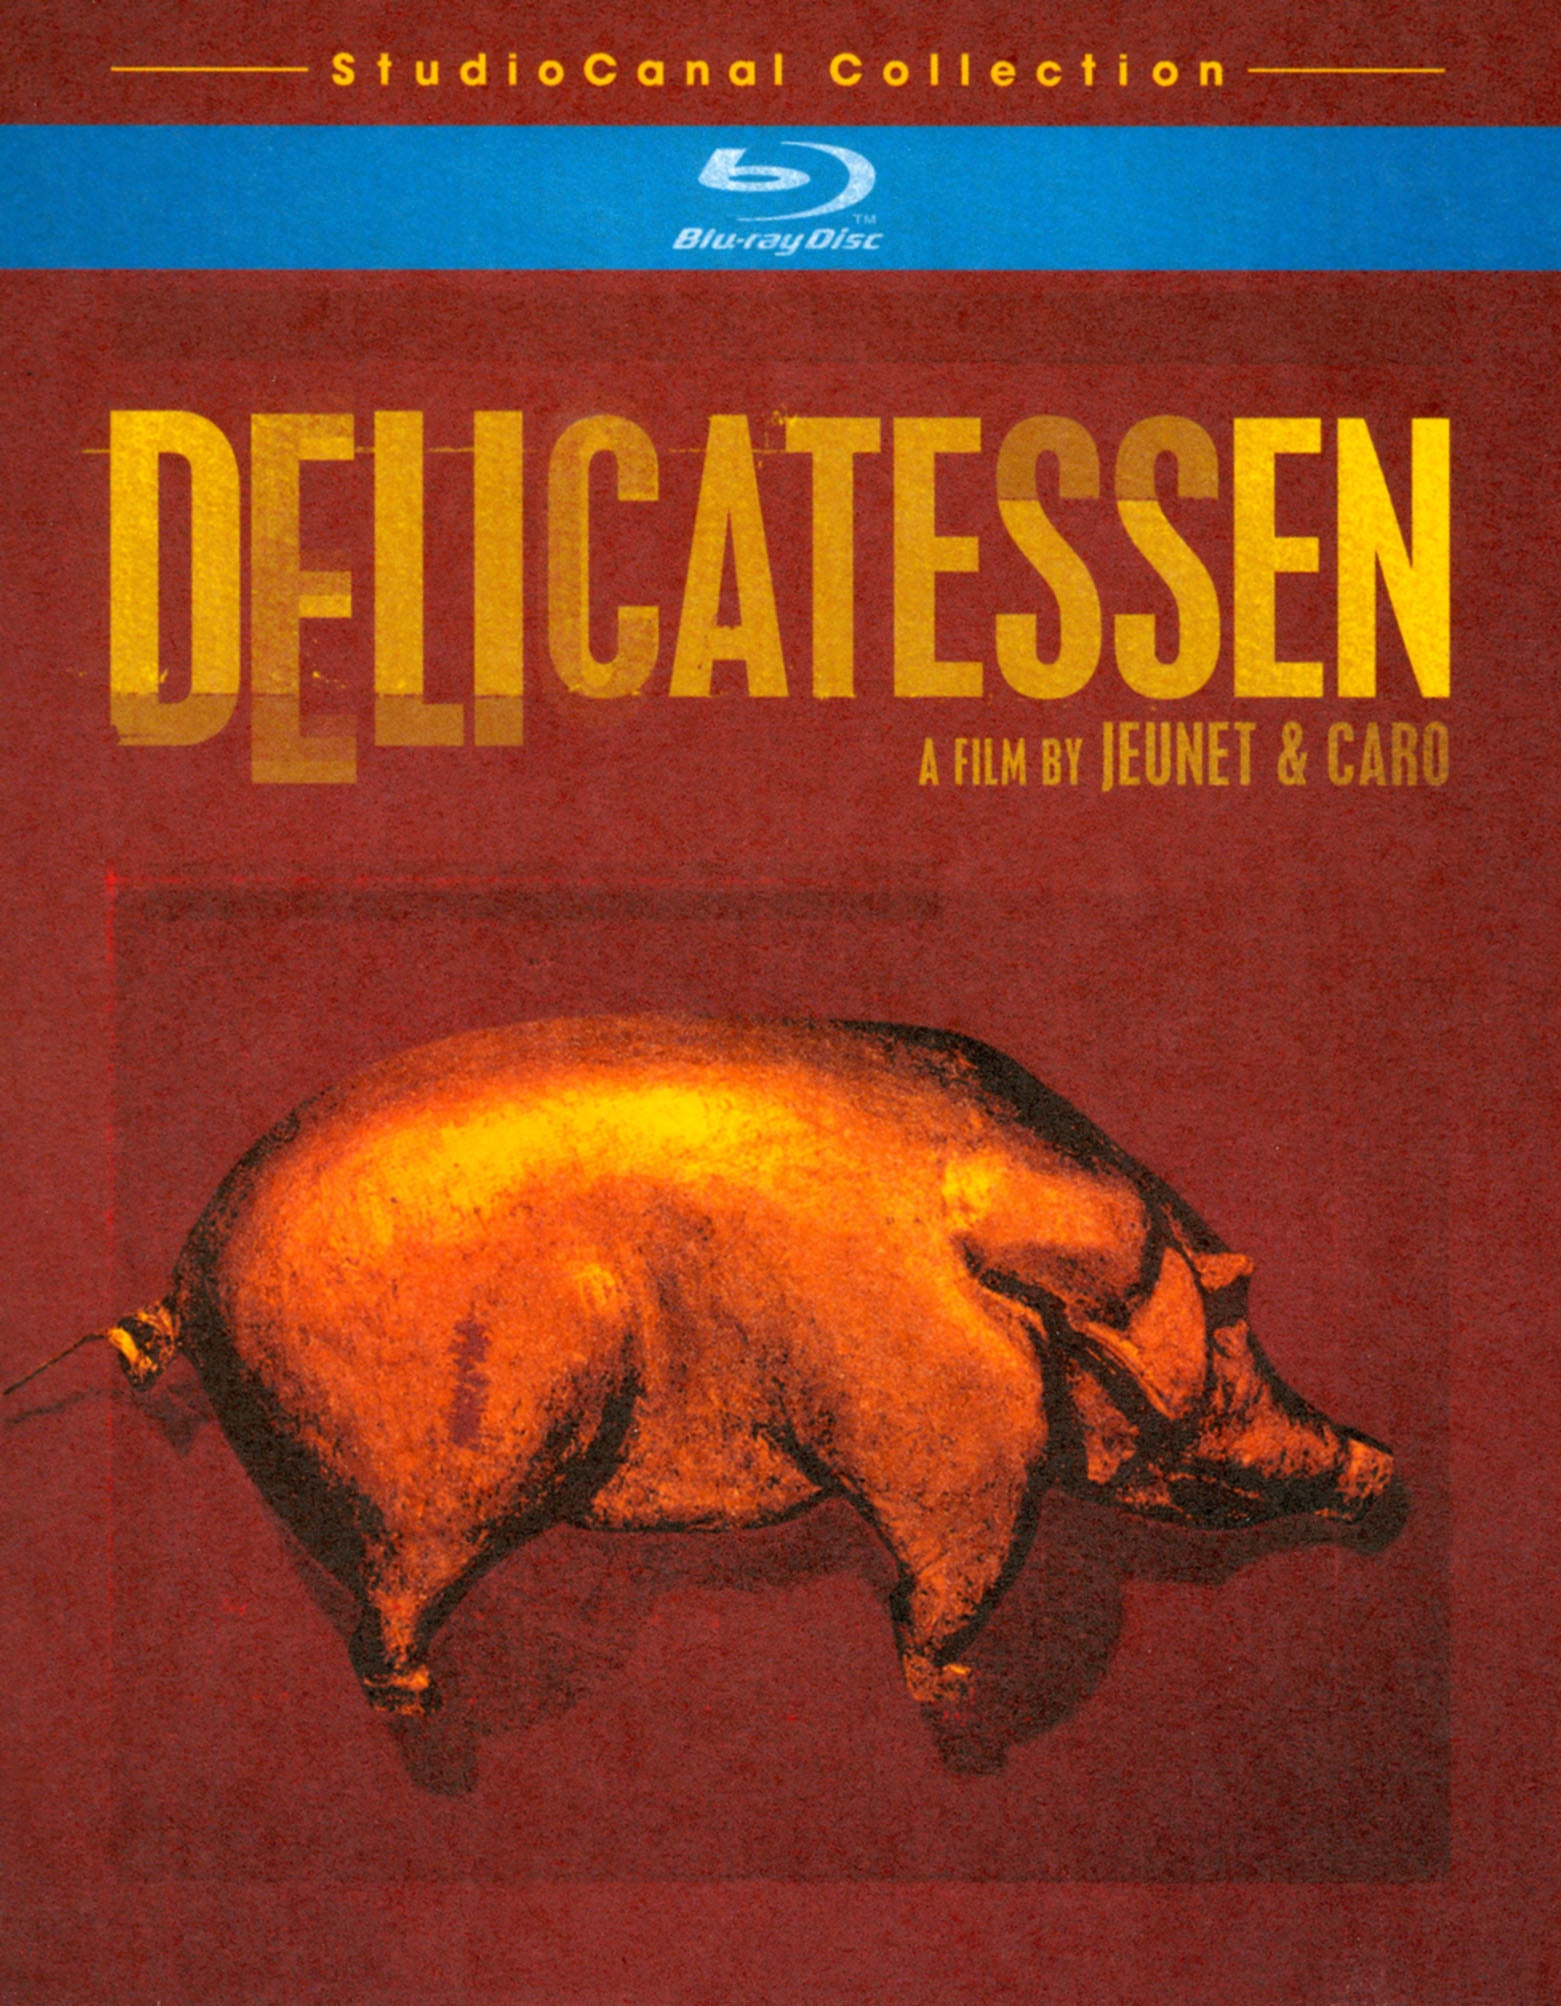 Delicatessen [Blu-ray] cover art